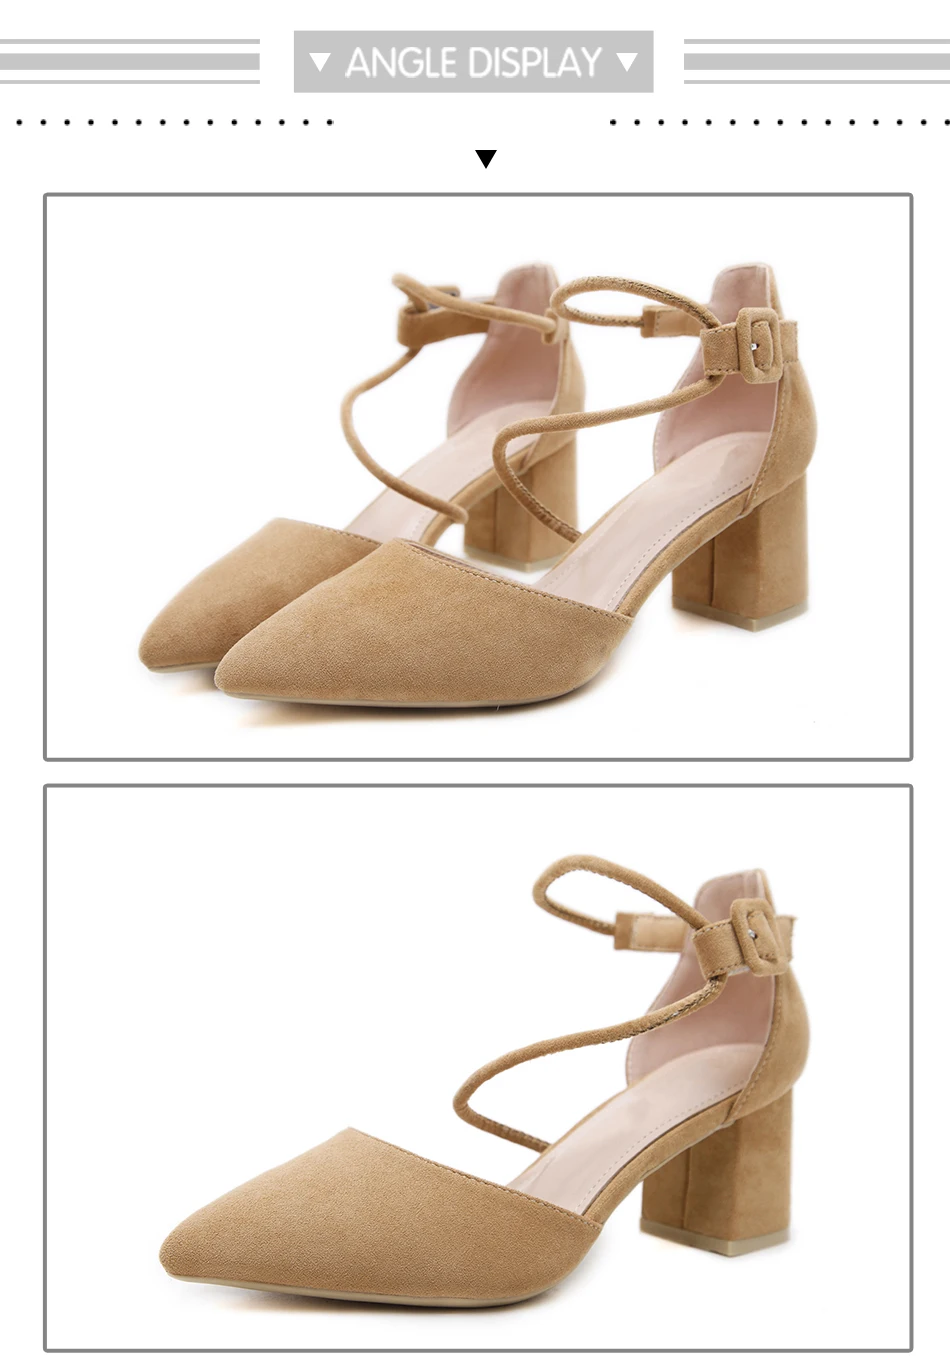 BYQDY/классическая женская обувь ручной работы; Новинка; сезон весна; модная женская обувь из флока с ремешком; женская обувь для вечеринок; коллекция года; женские босоножки на толстом каблуке с закрытым носком